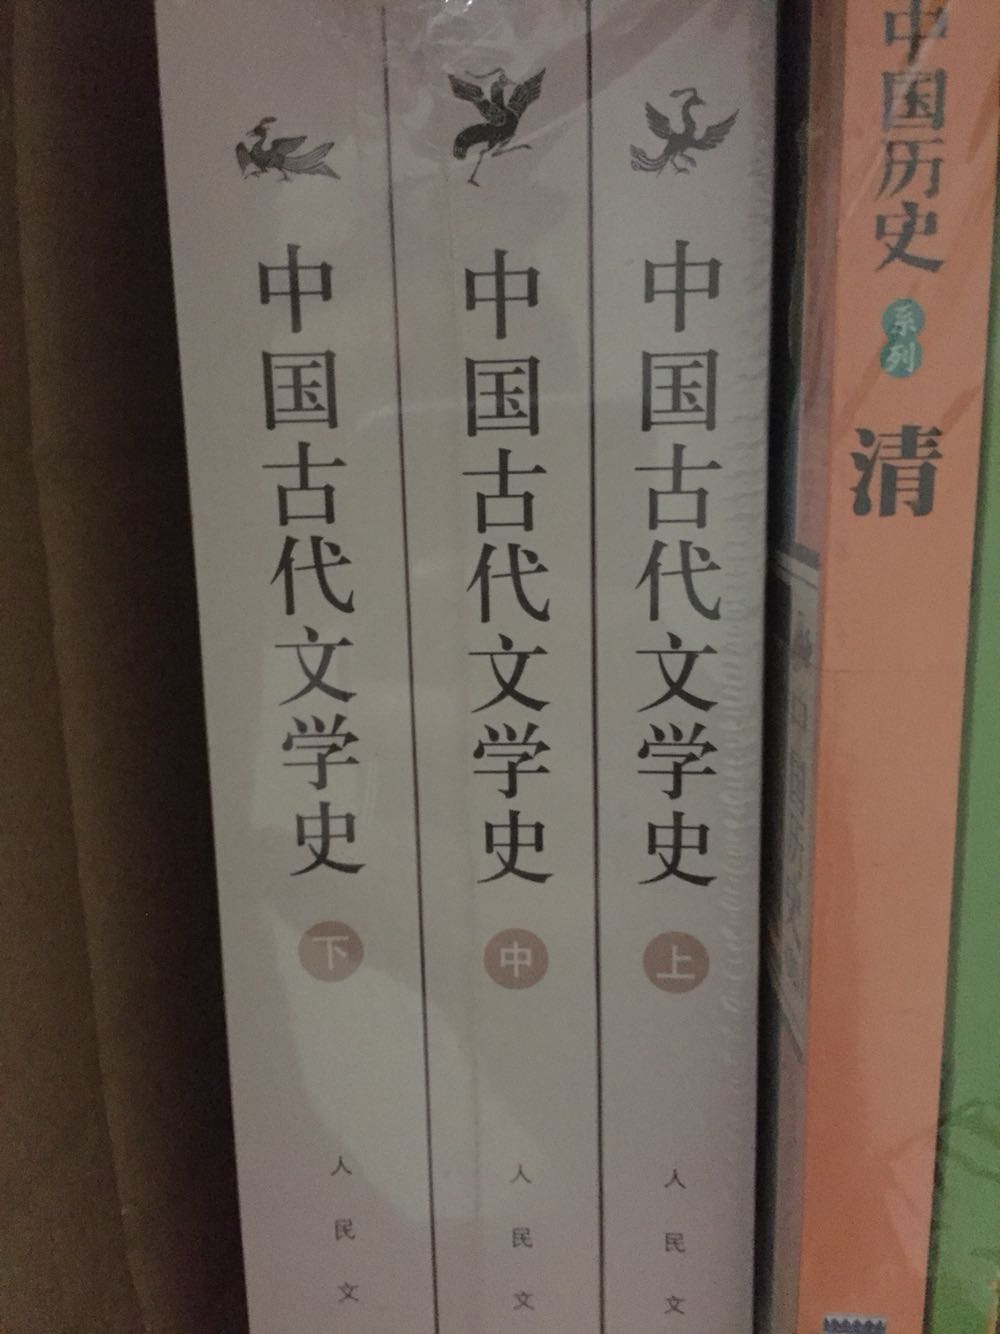 不错的书籍，能够让人理解中国古代文学史。还没看完，慢慢啃吧